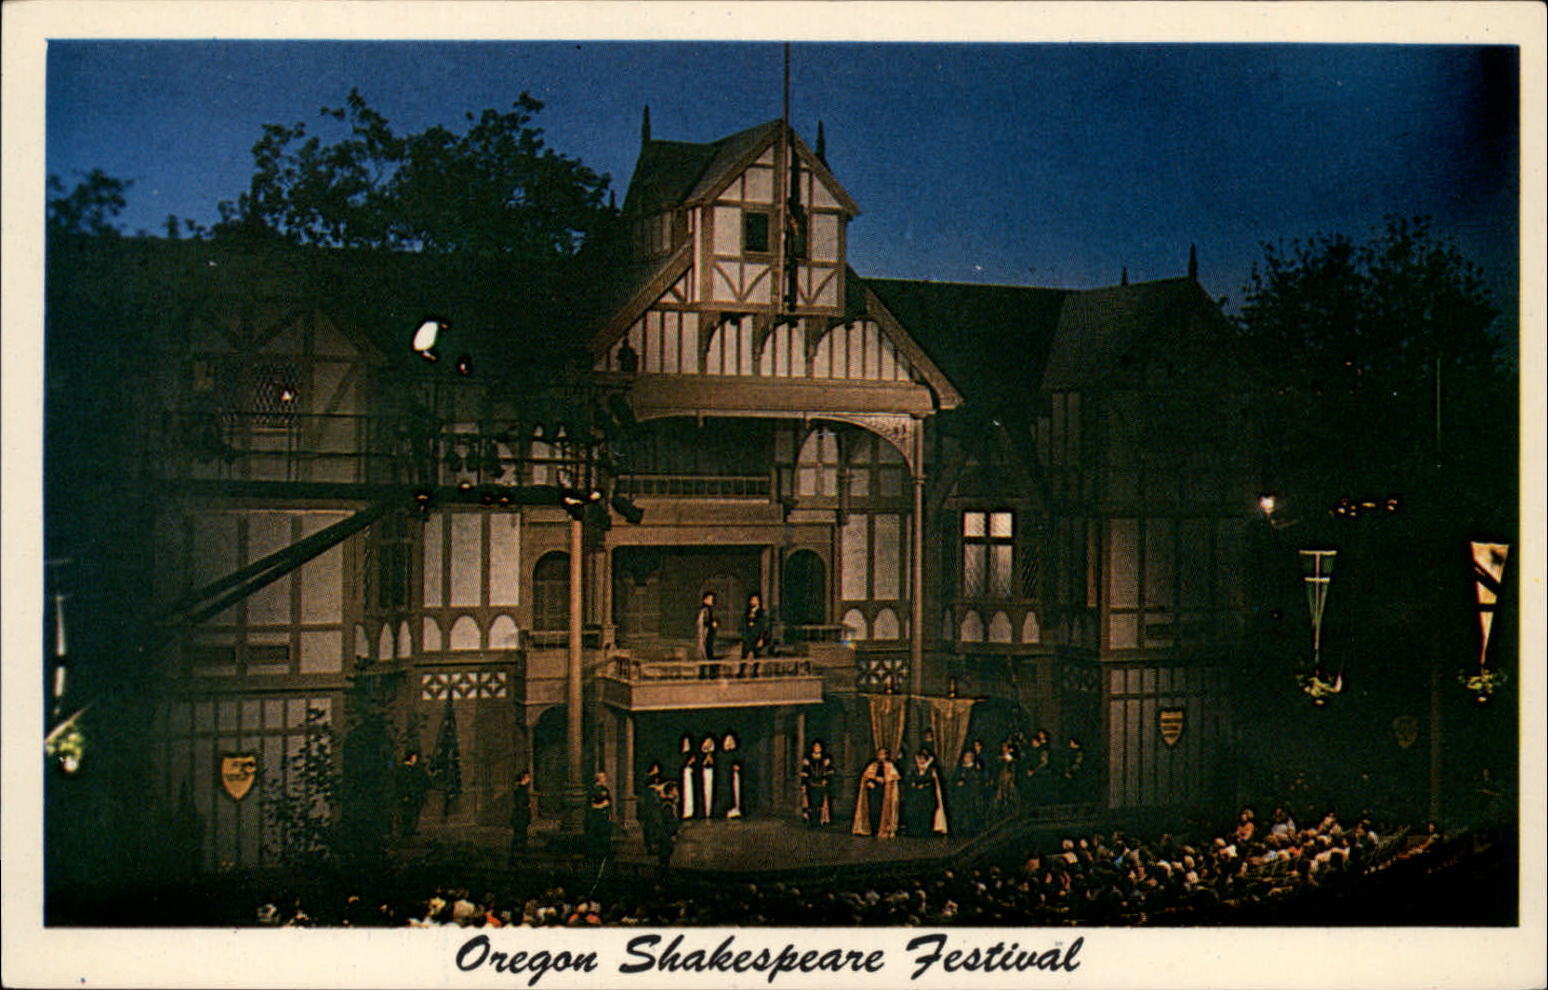 Ashland Oregon Lithia Park Shakespearean Festival stage unused vintage postcard